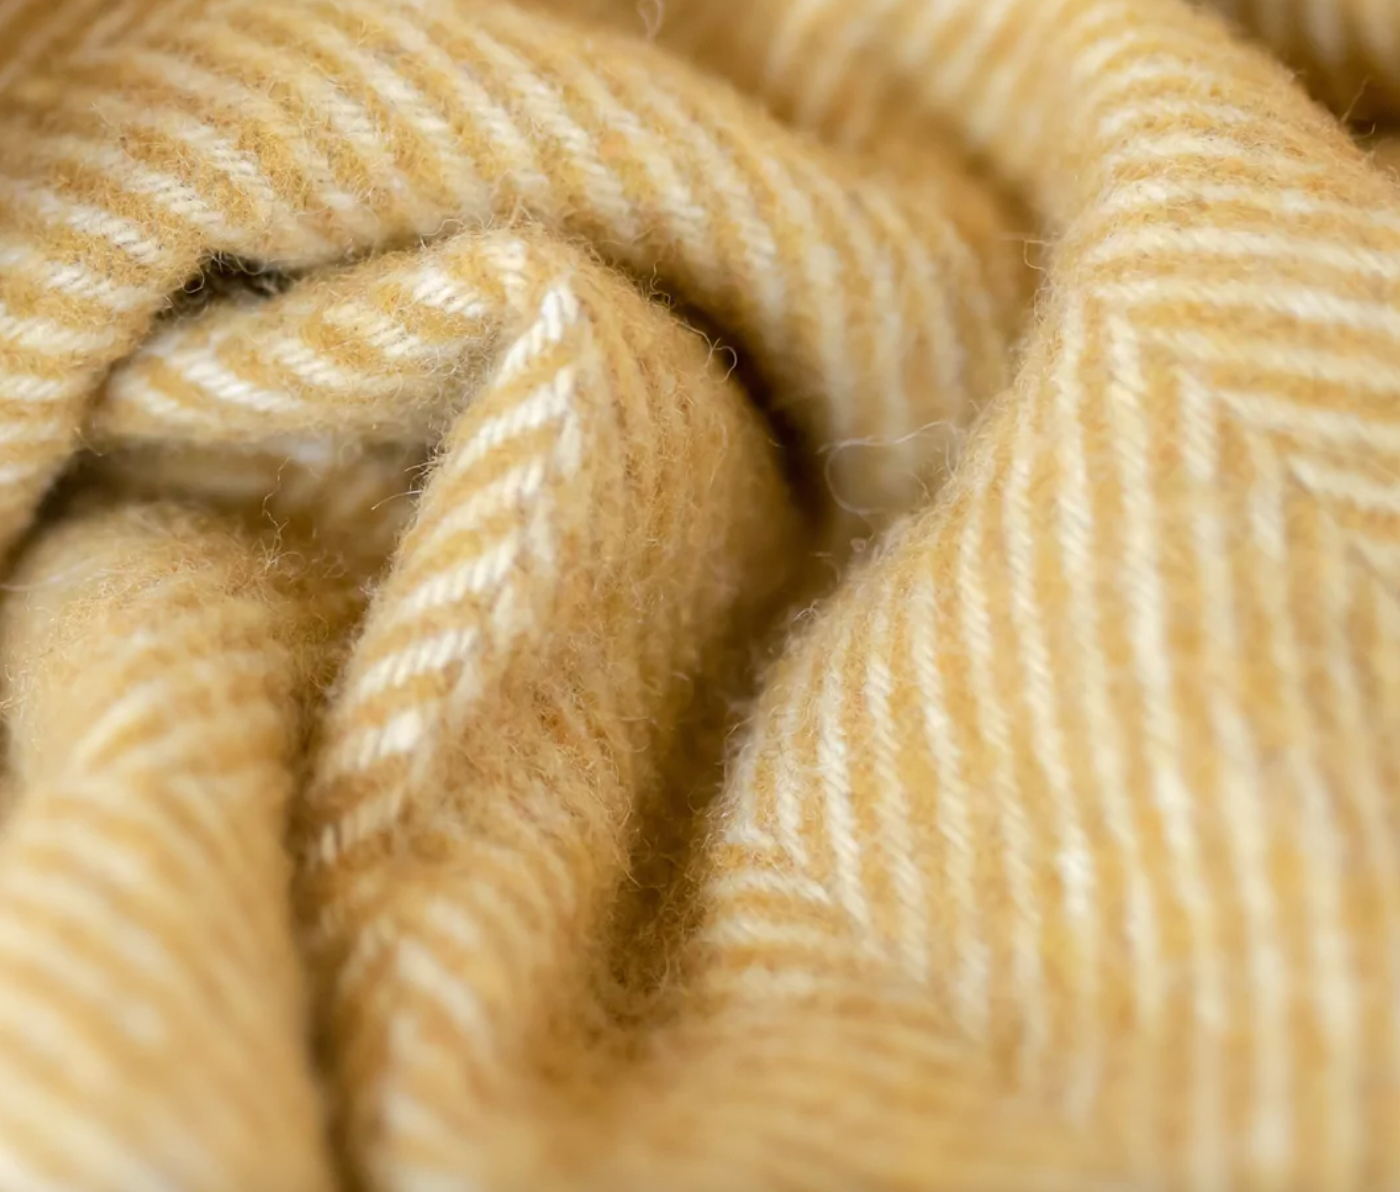 Recycled Wool Blanket in Mustard Herringbone